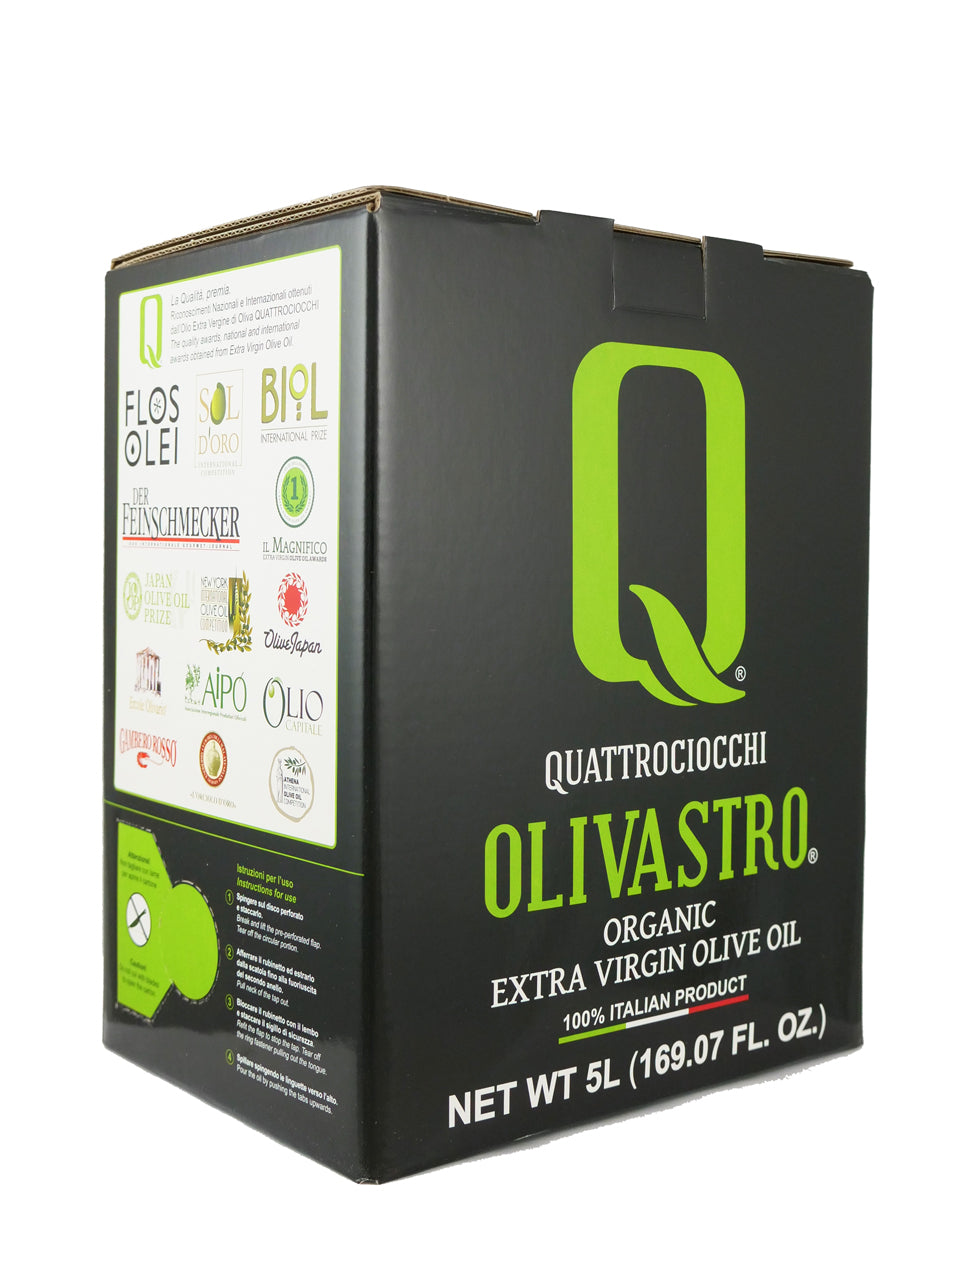 Quattrociocchi Olivastro Organic 5L Bag-in-Box 4-Pack